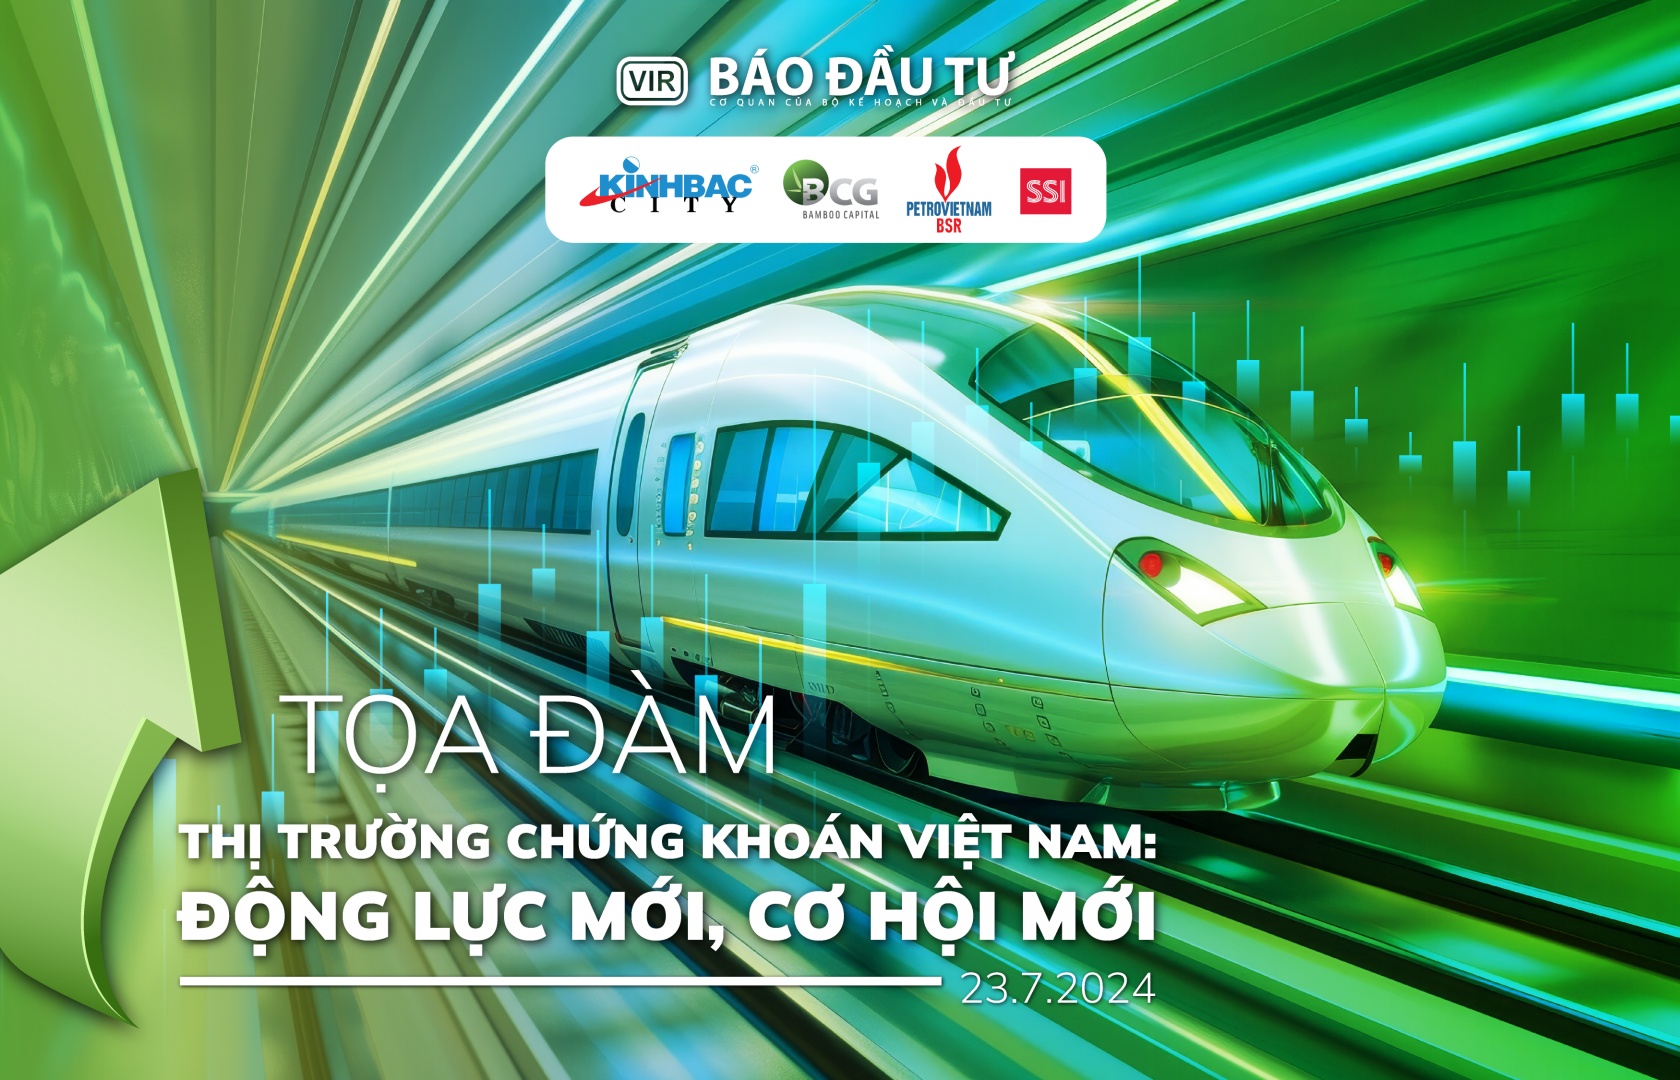 VIR to host seminar on Vietnam's stock market